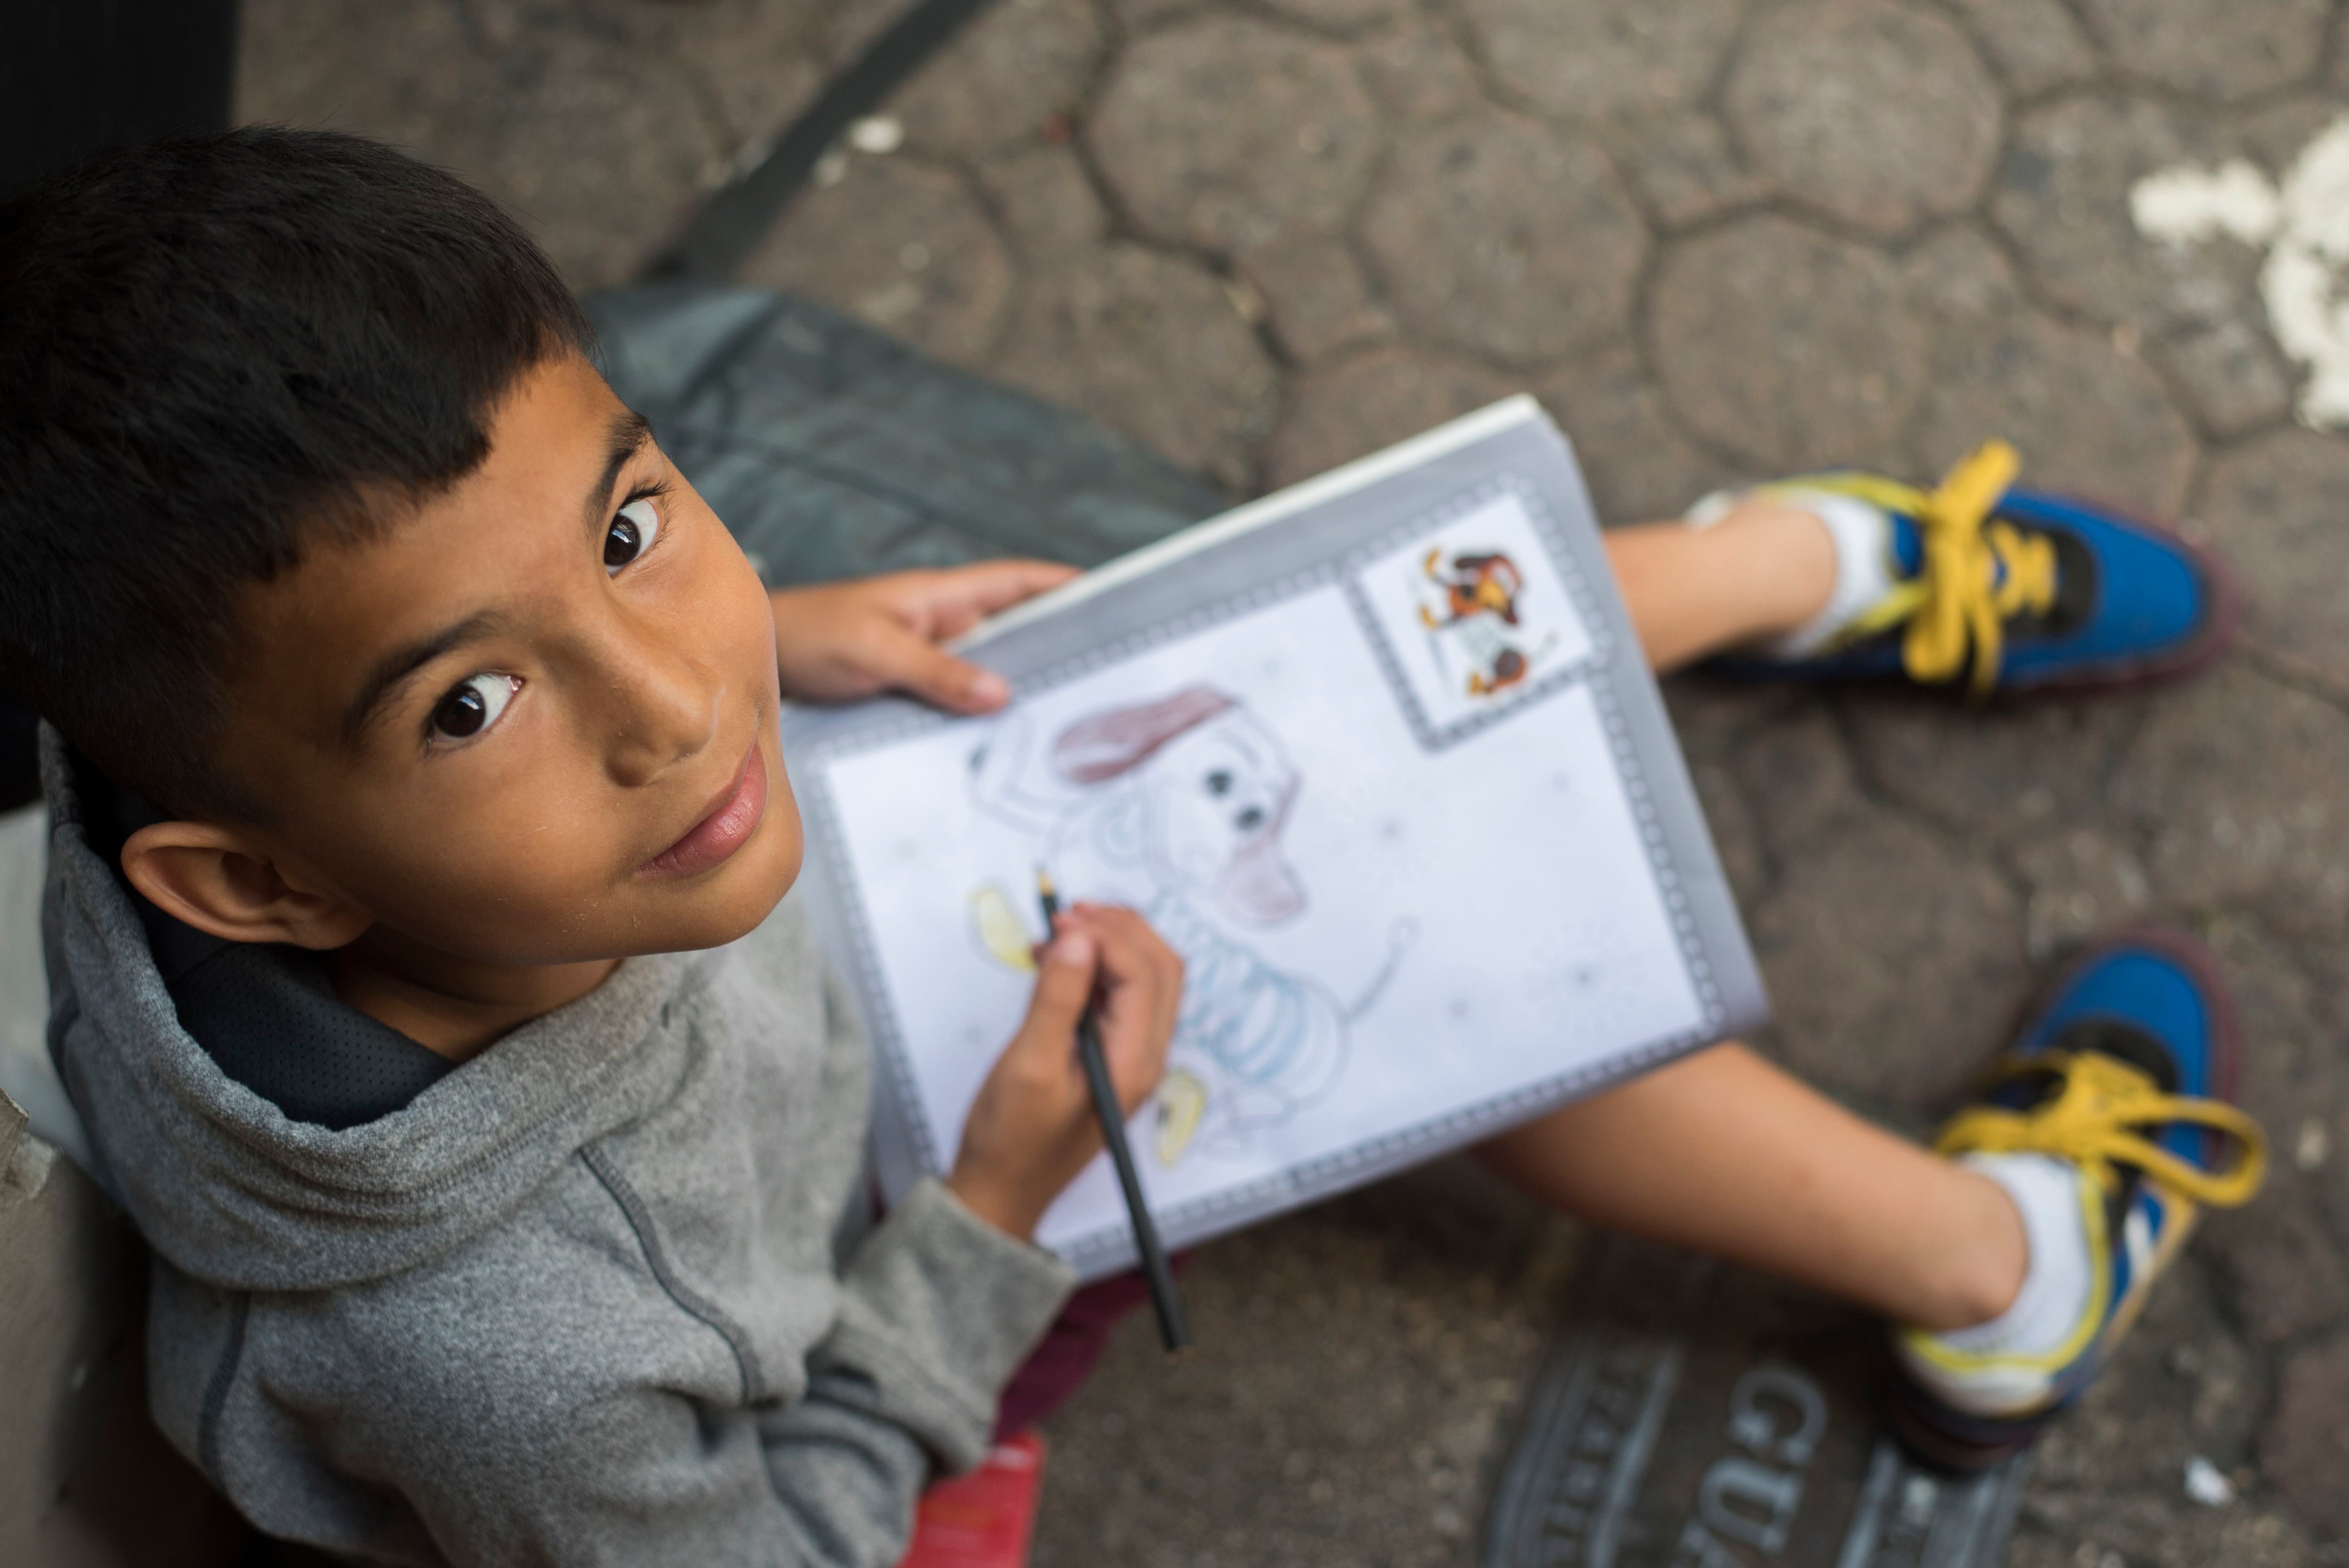 Un cuaderno lleno de ilustraciones de Disney es lo que mantiene entretenido a Abel durante las horas en que su papá reúne dinero en el centro de San José.